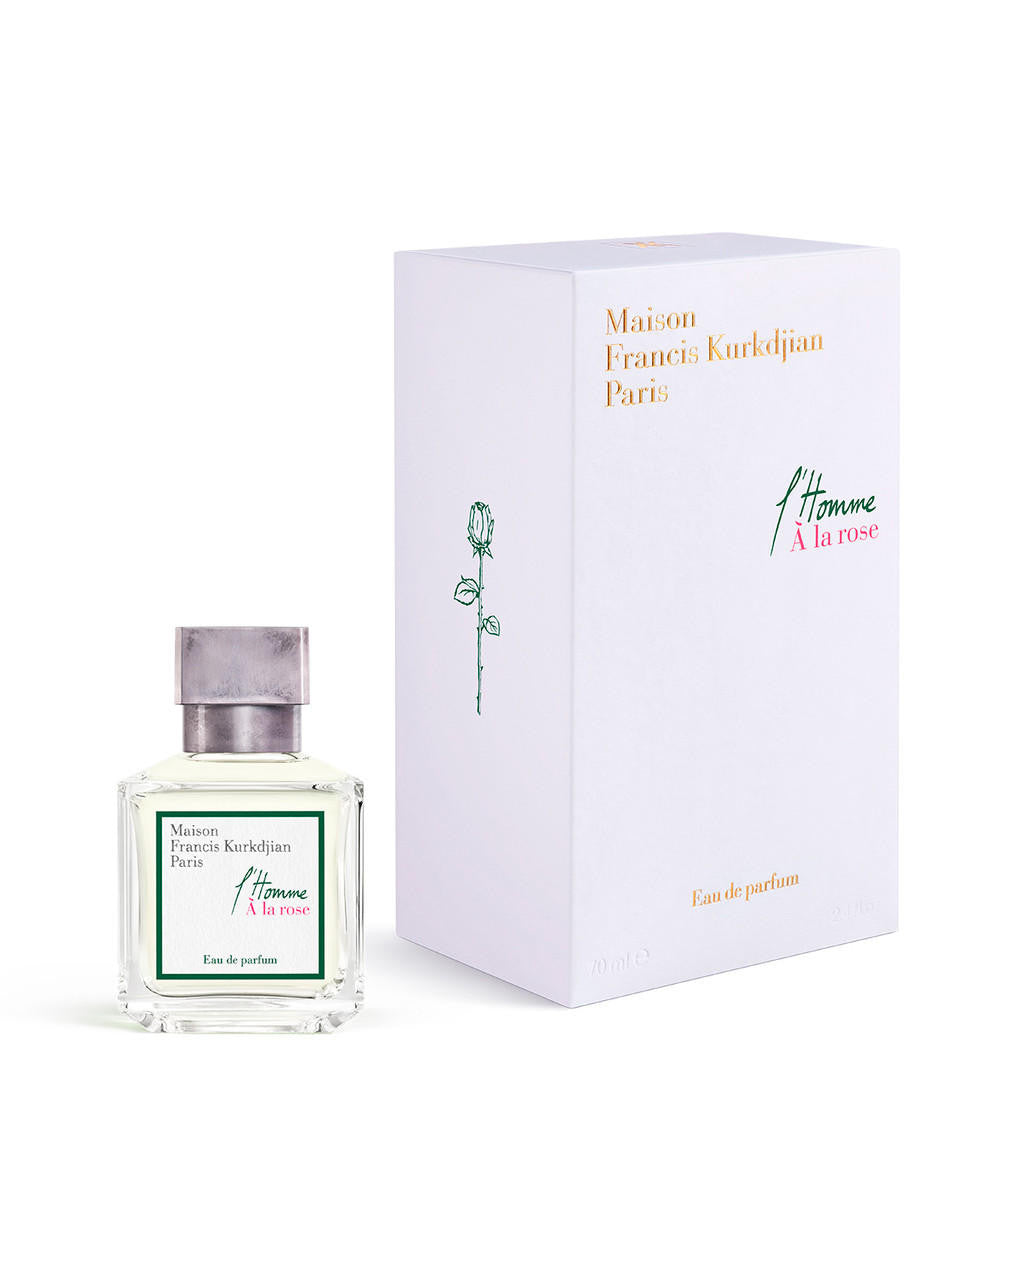  Maison Francis Kurkdjian L’Homme A la Rose Eau de Parfum 